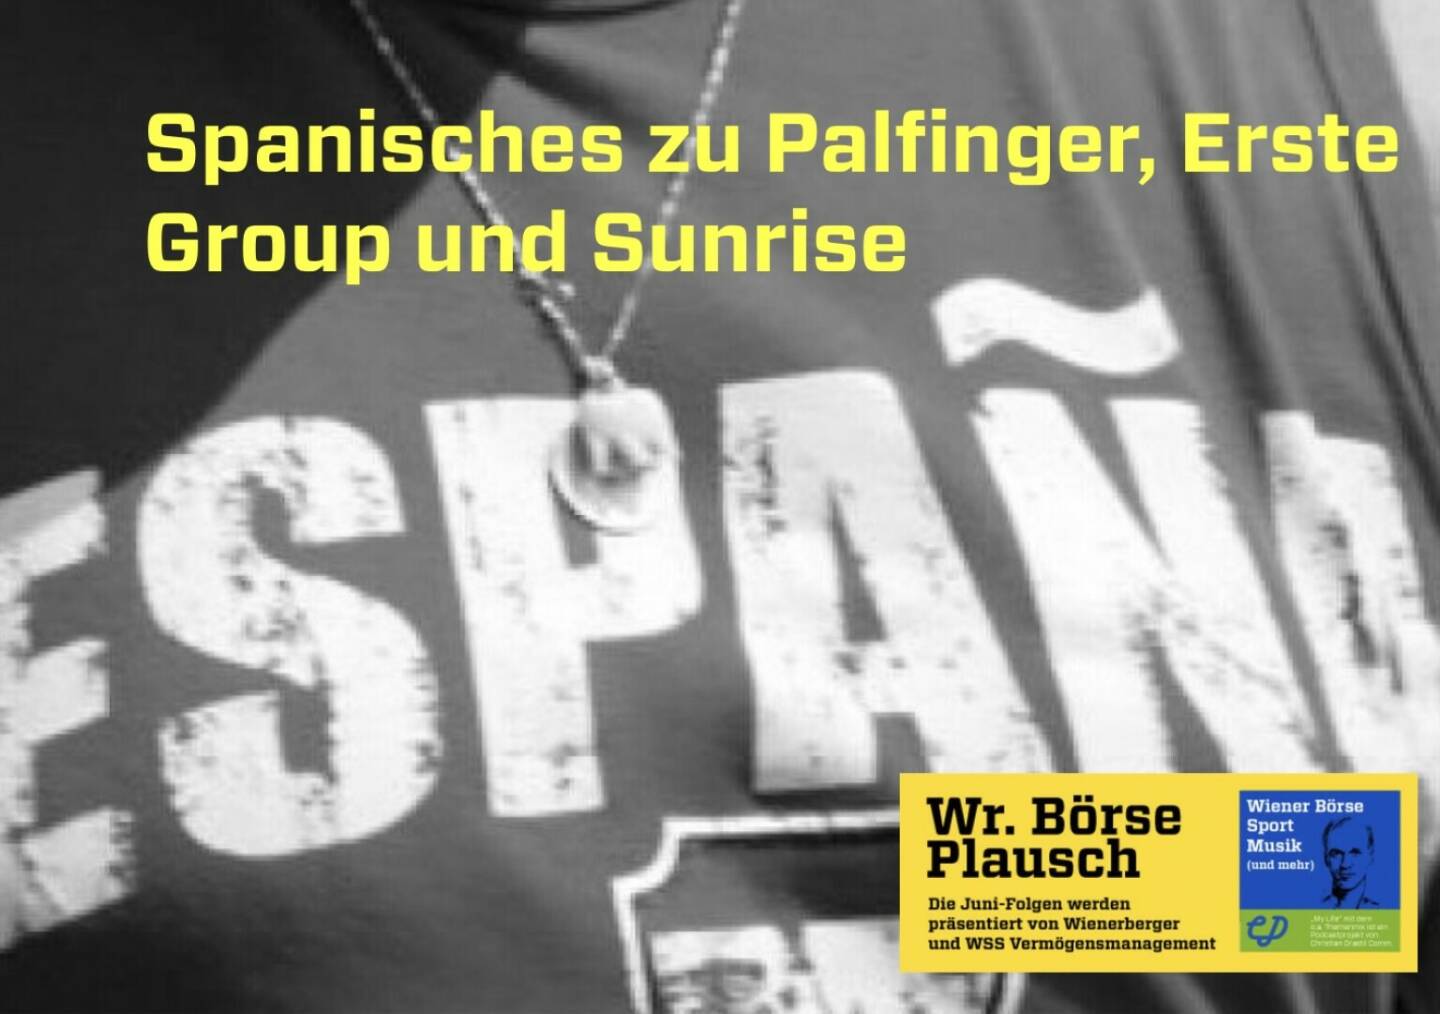 Spanisches zu Palfinger, Erste Group und Sunrise in Folge S2/108 der Wiener Börse Pläusche im Rahmen von http://www.christian-drastil.com/podcast . 